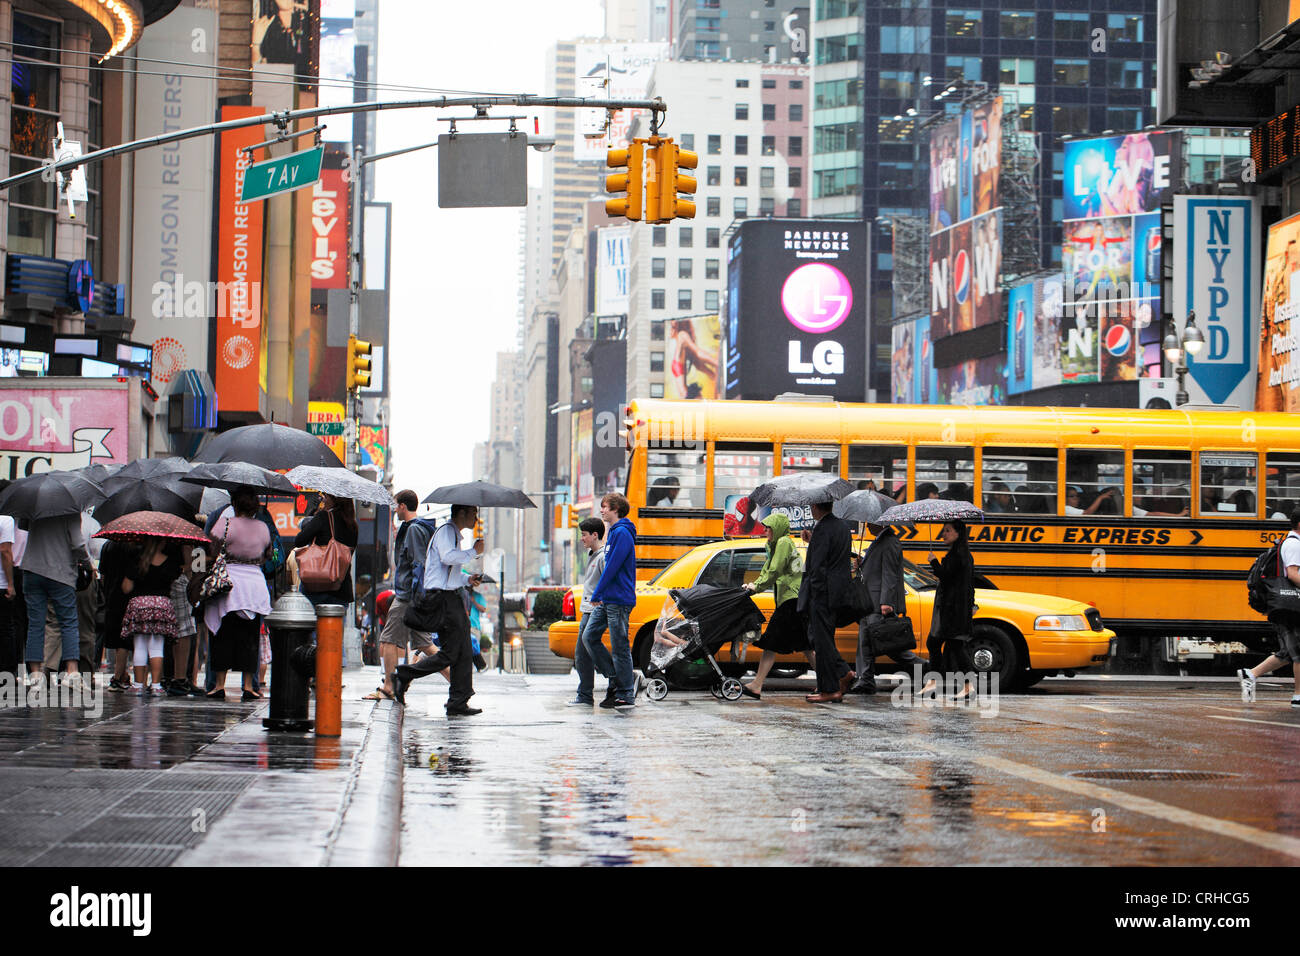 La città di NEW YORK, Stati Uniti d'America - 12 giugno: persone che attraversano una strada in piovoso Times Square. Giugno 12, 2012 a New York City, Stati Uniti d'America Foto Stock